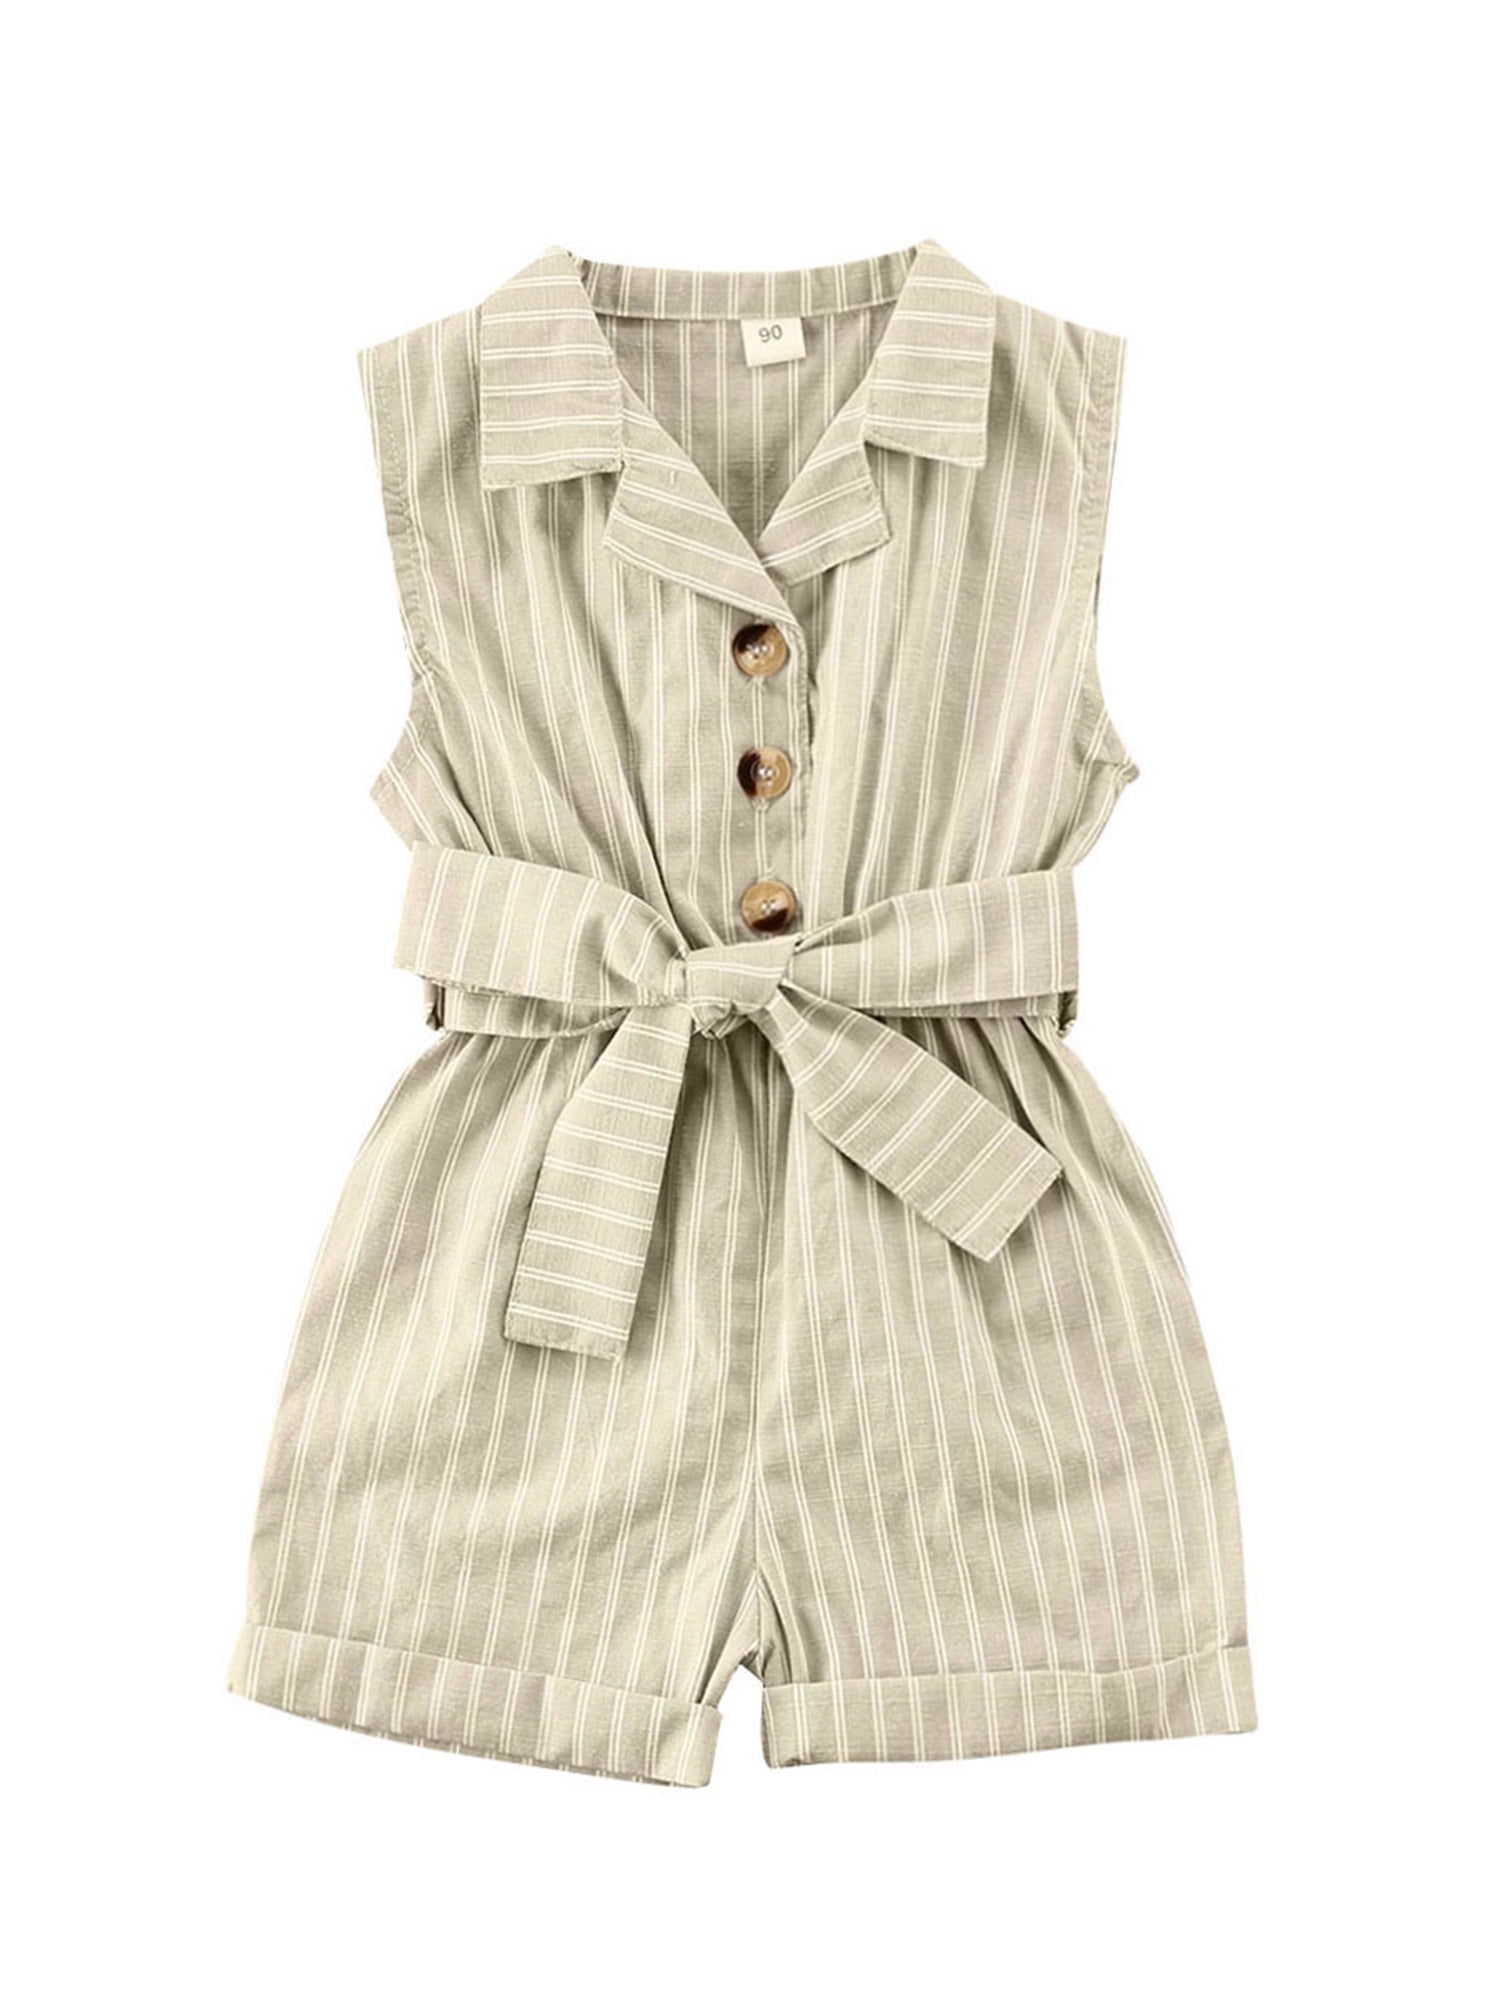 White Turn-down Collar Romper Sweet Lady Sleeveless Bodysuit for Baby Girls